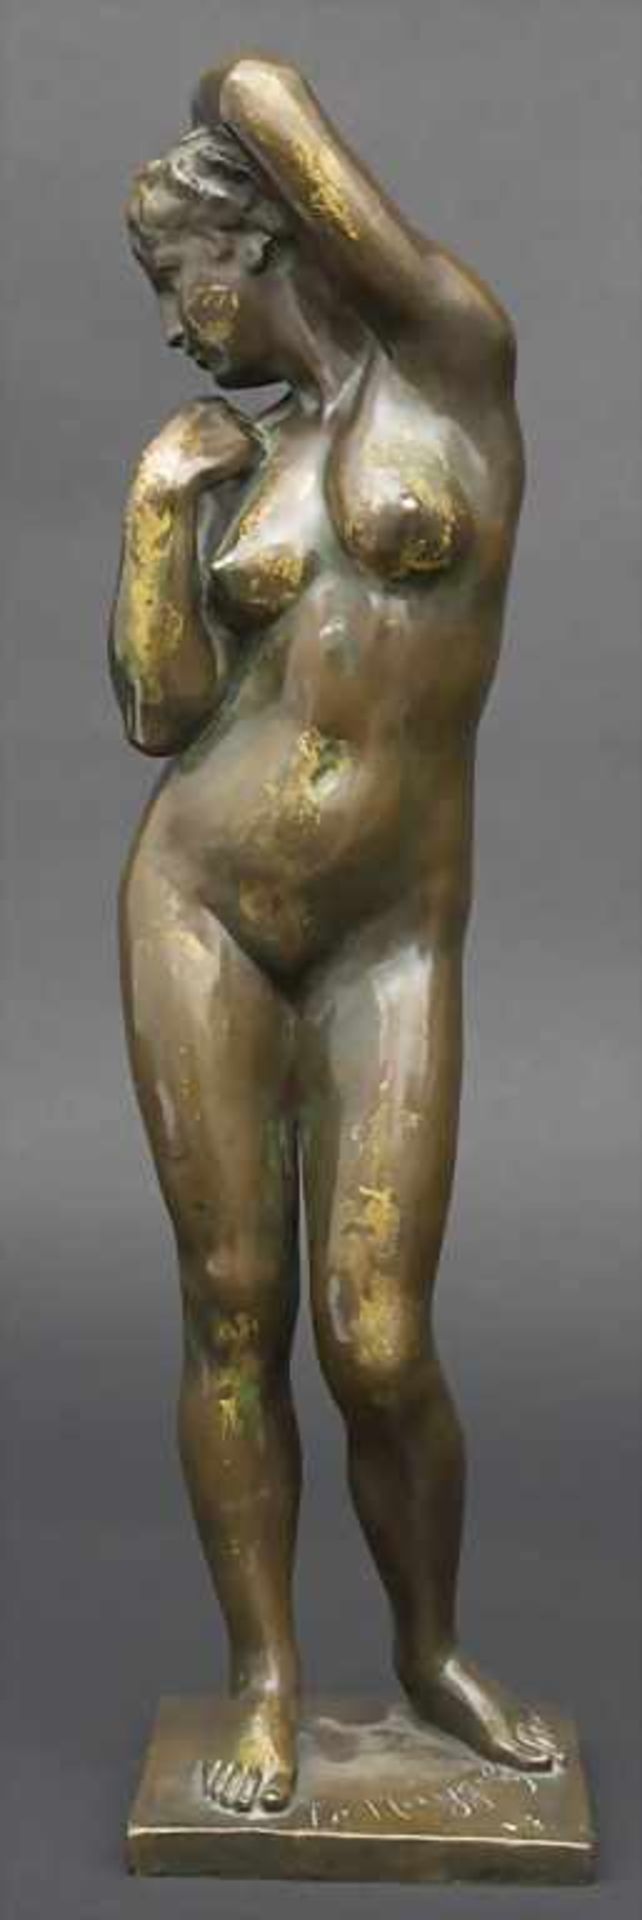 Frans Huygelen 1878-1940, Jugendstil Bronze, Weiblicher Akt / An Art Nouveau bronze sculpture of a